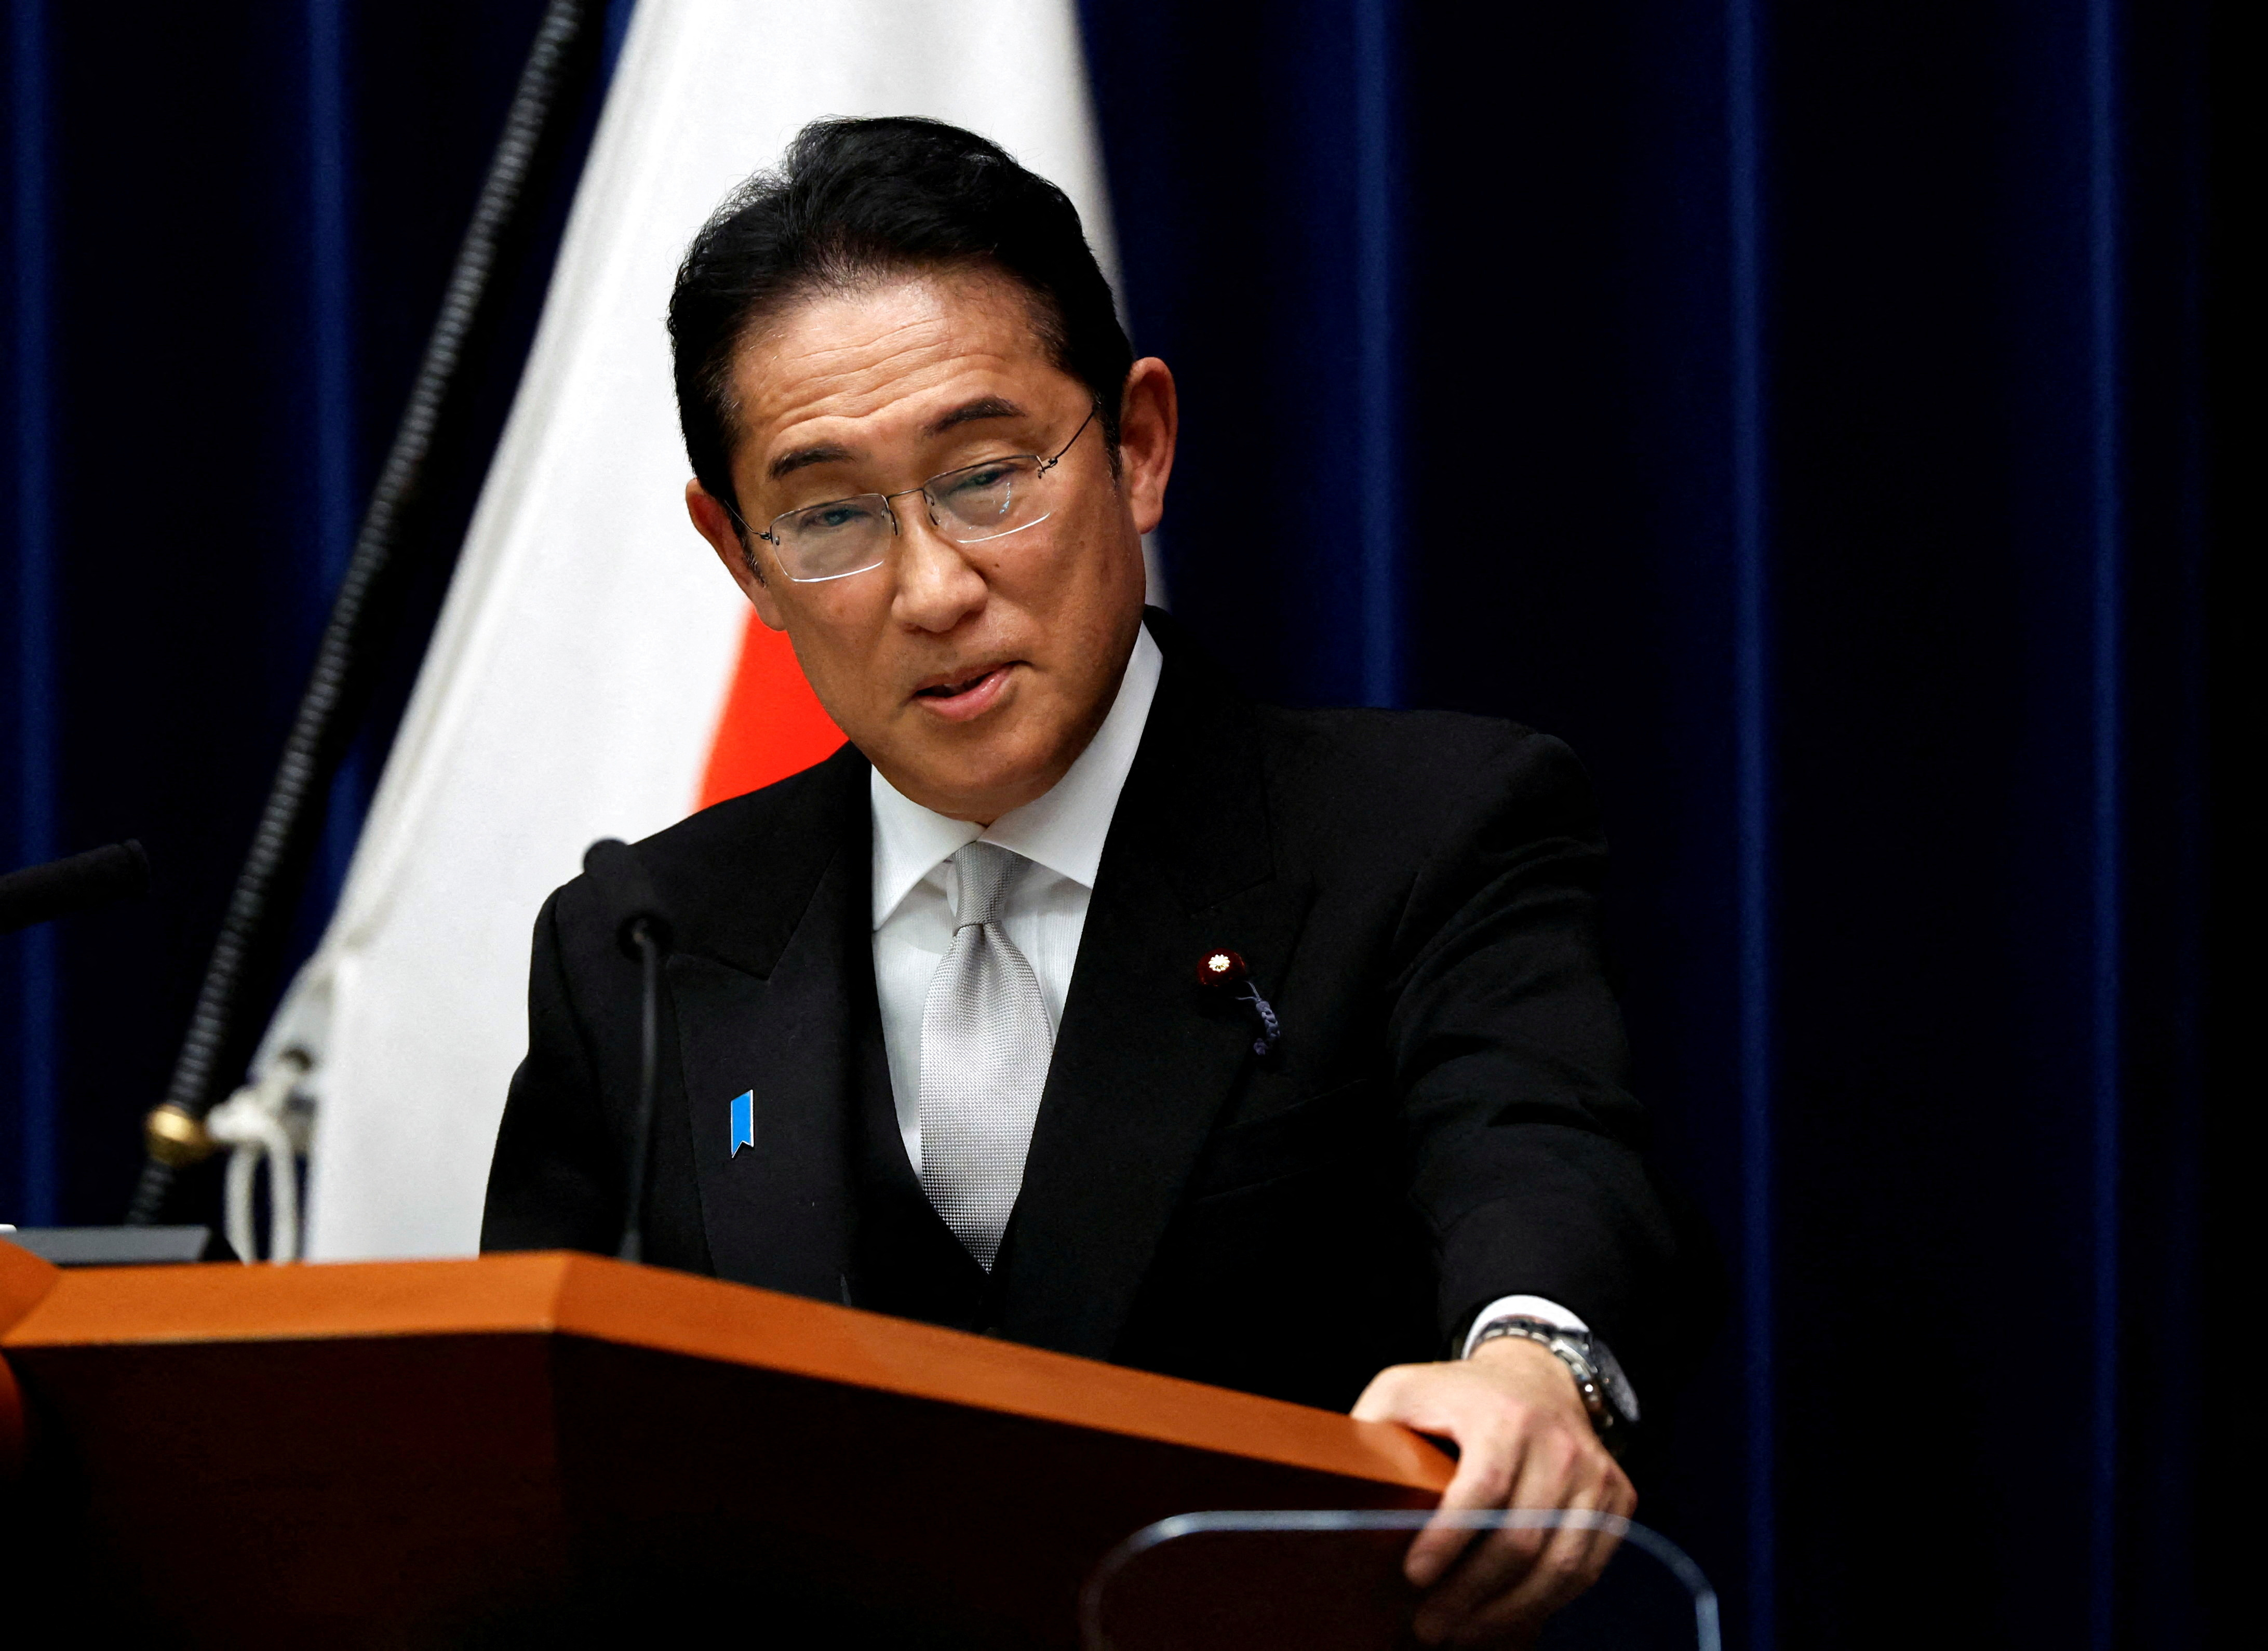 米大統領、岸田首相を国賓待遇で招待 4月10日＝ホワイトハウス - ロイター (Reuters Japan)